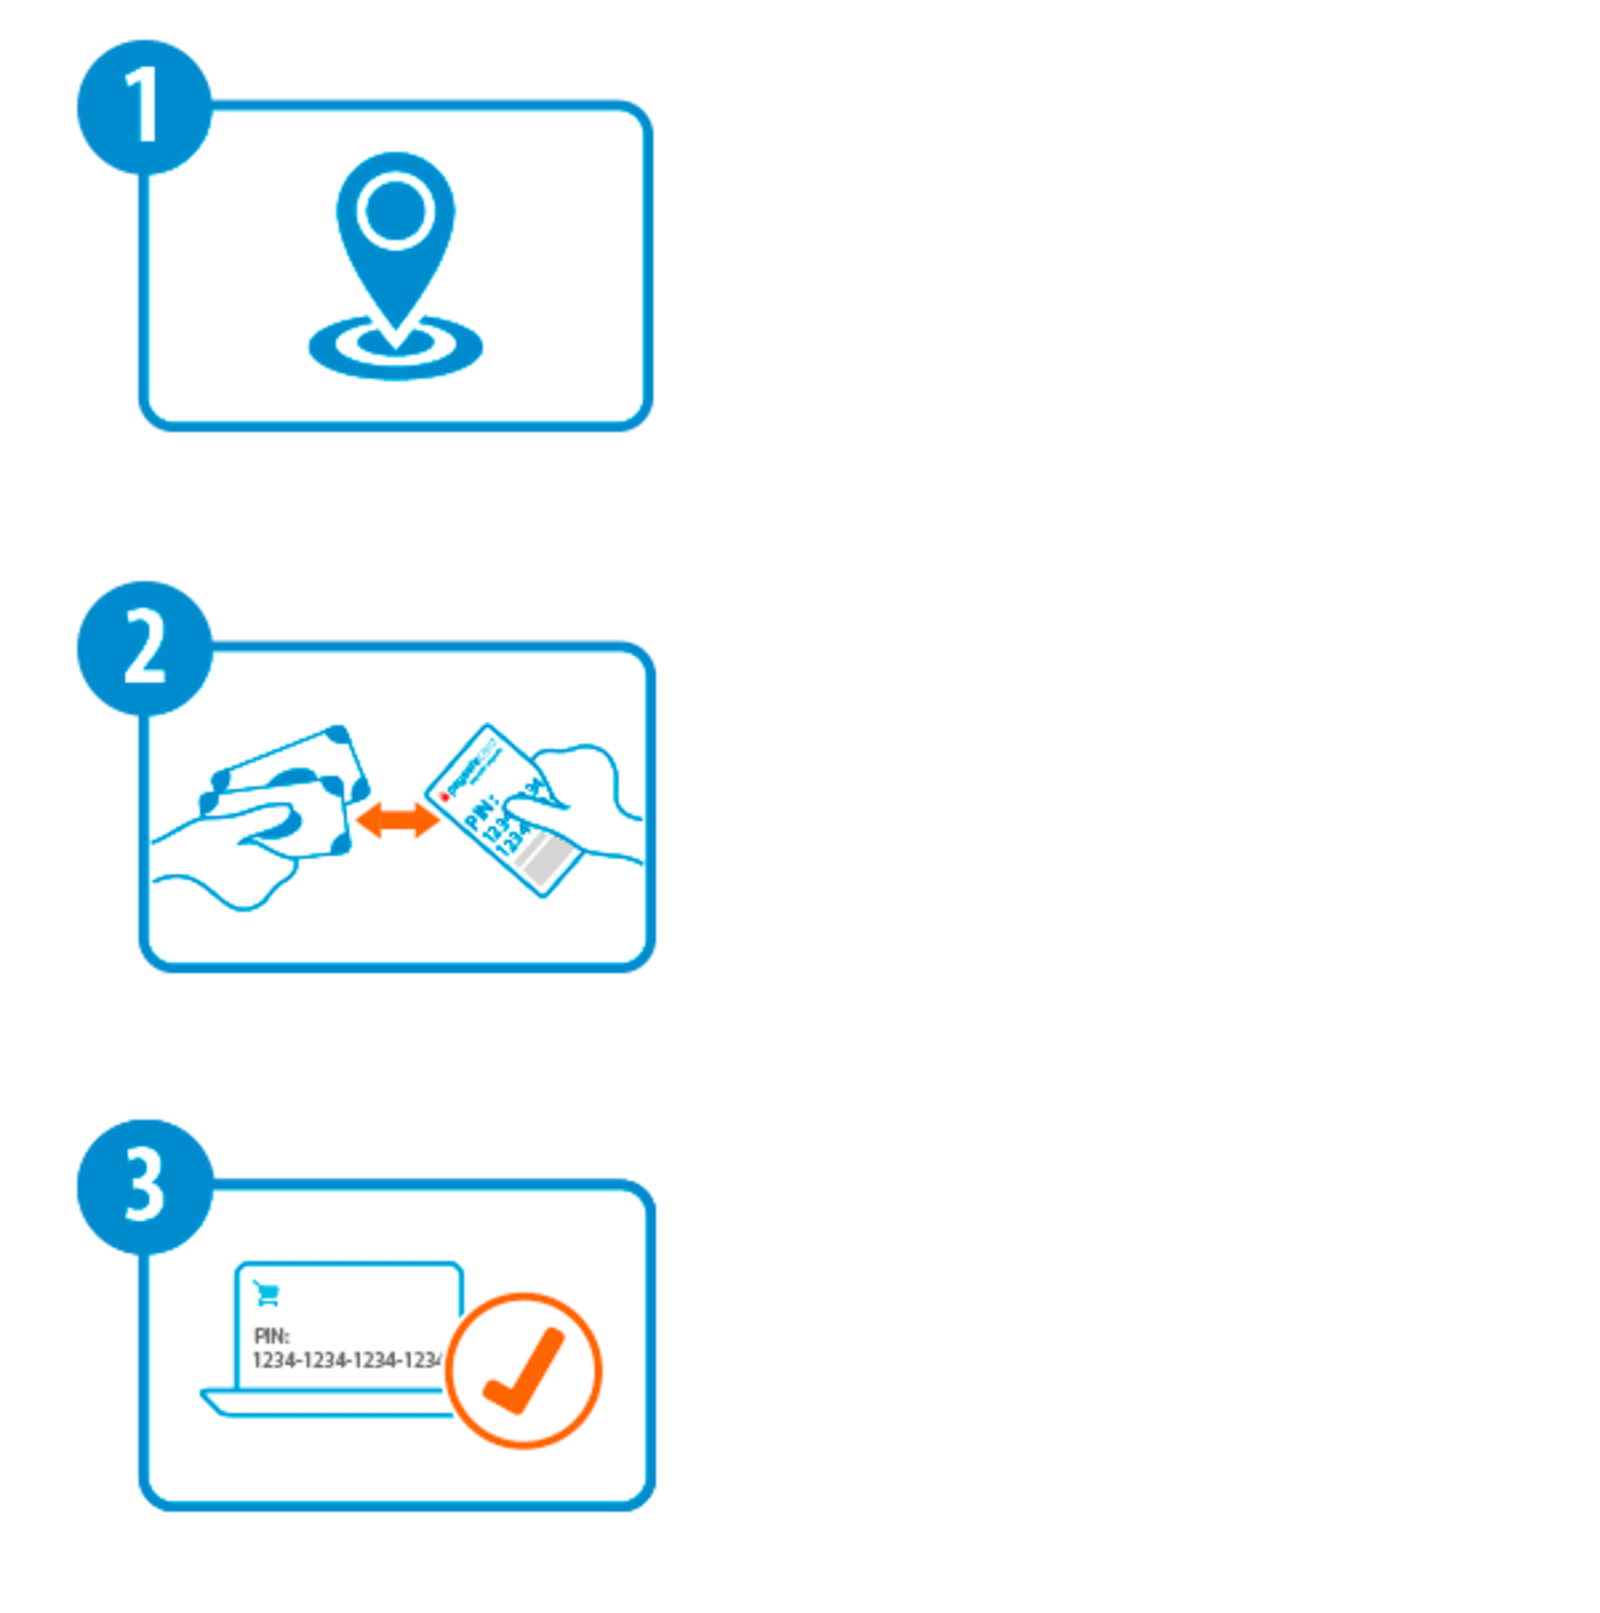 Cómo jugar en casino online con Paysafecard en España